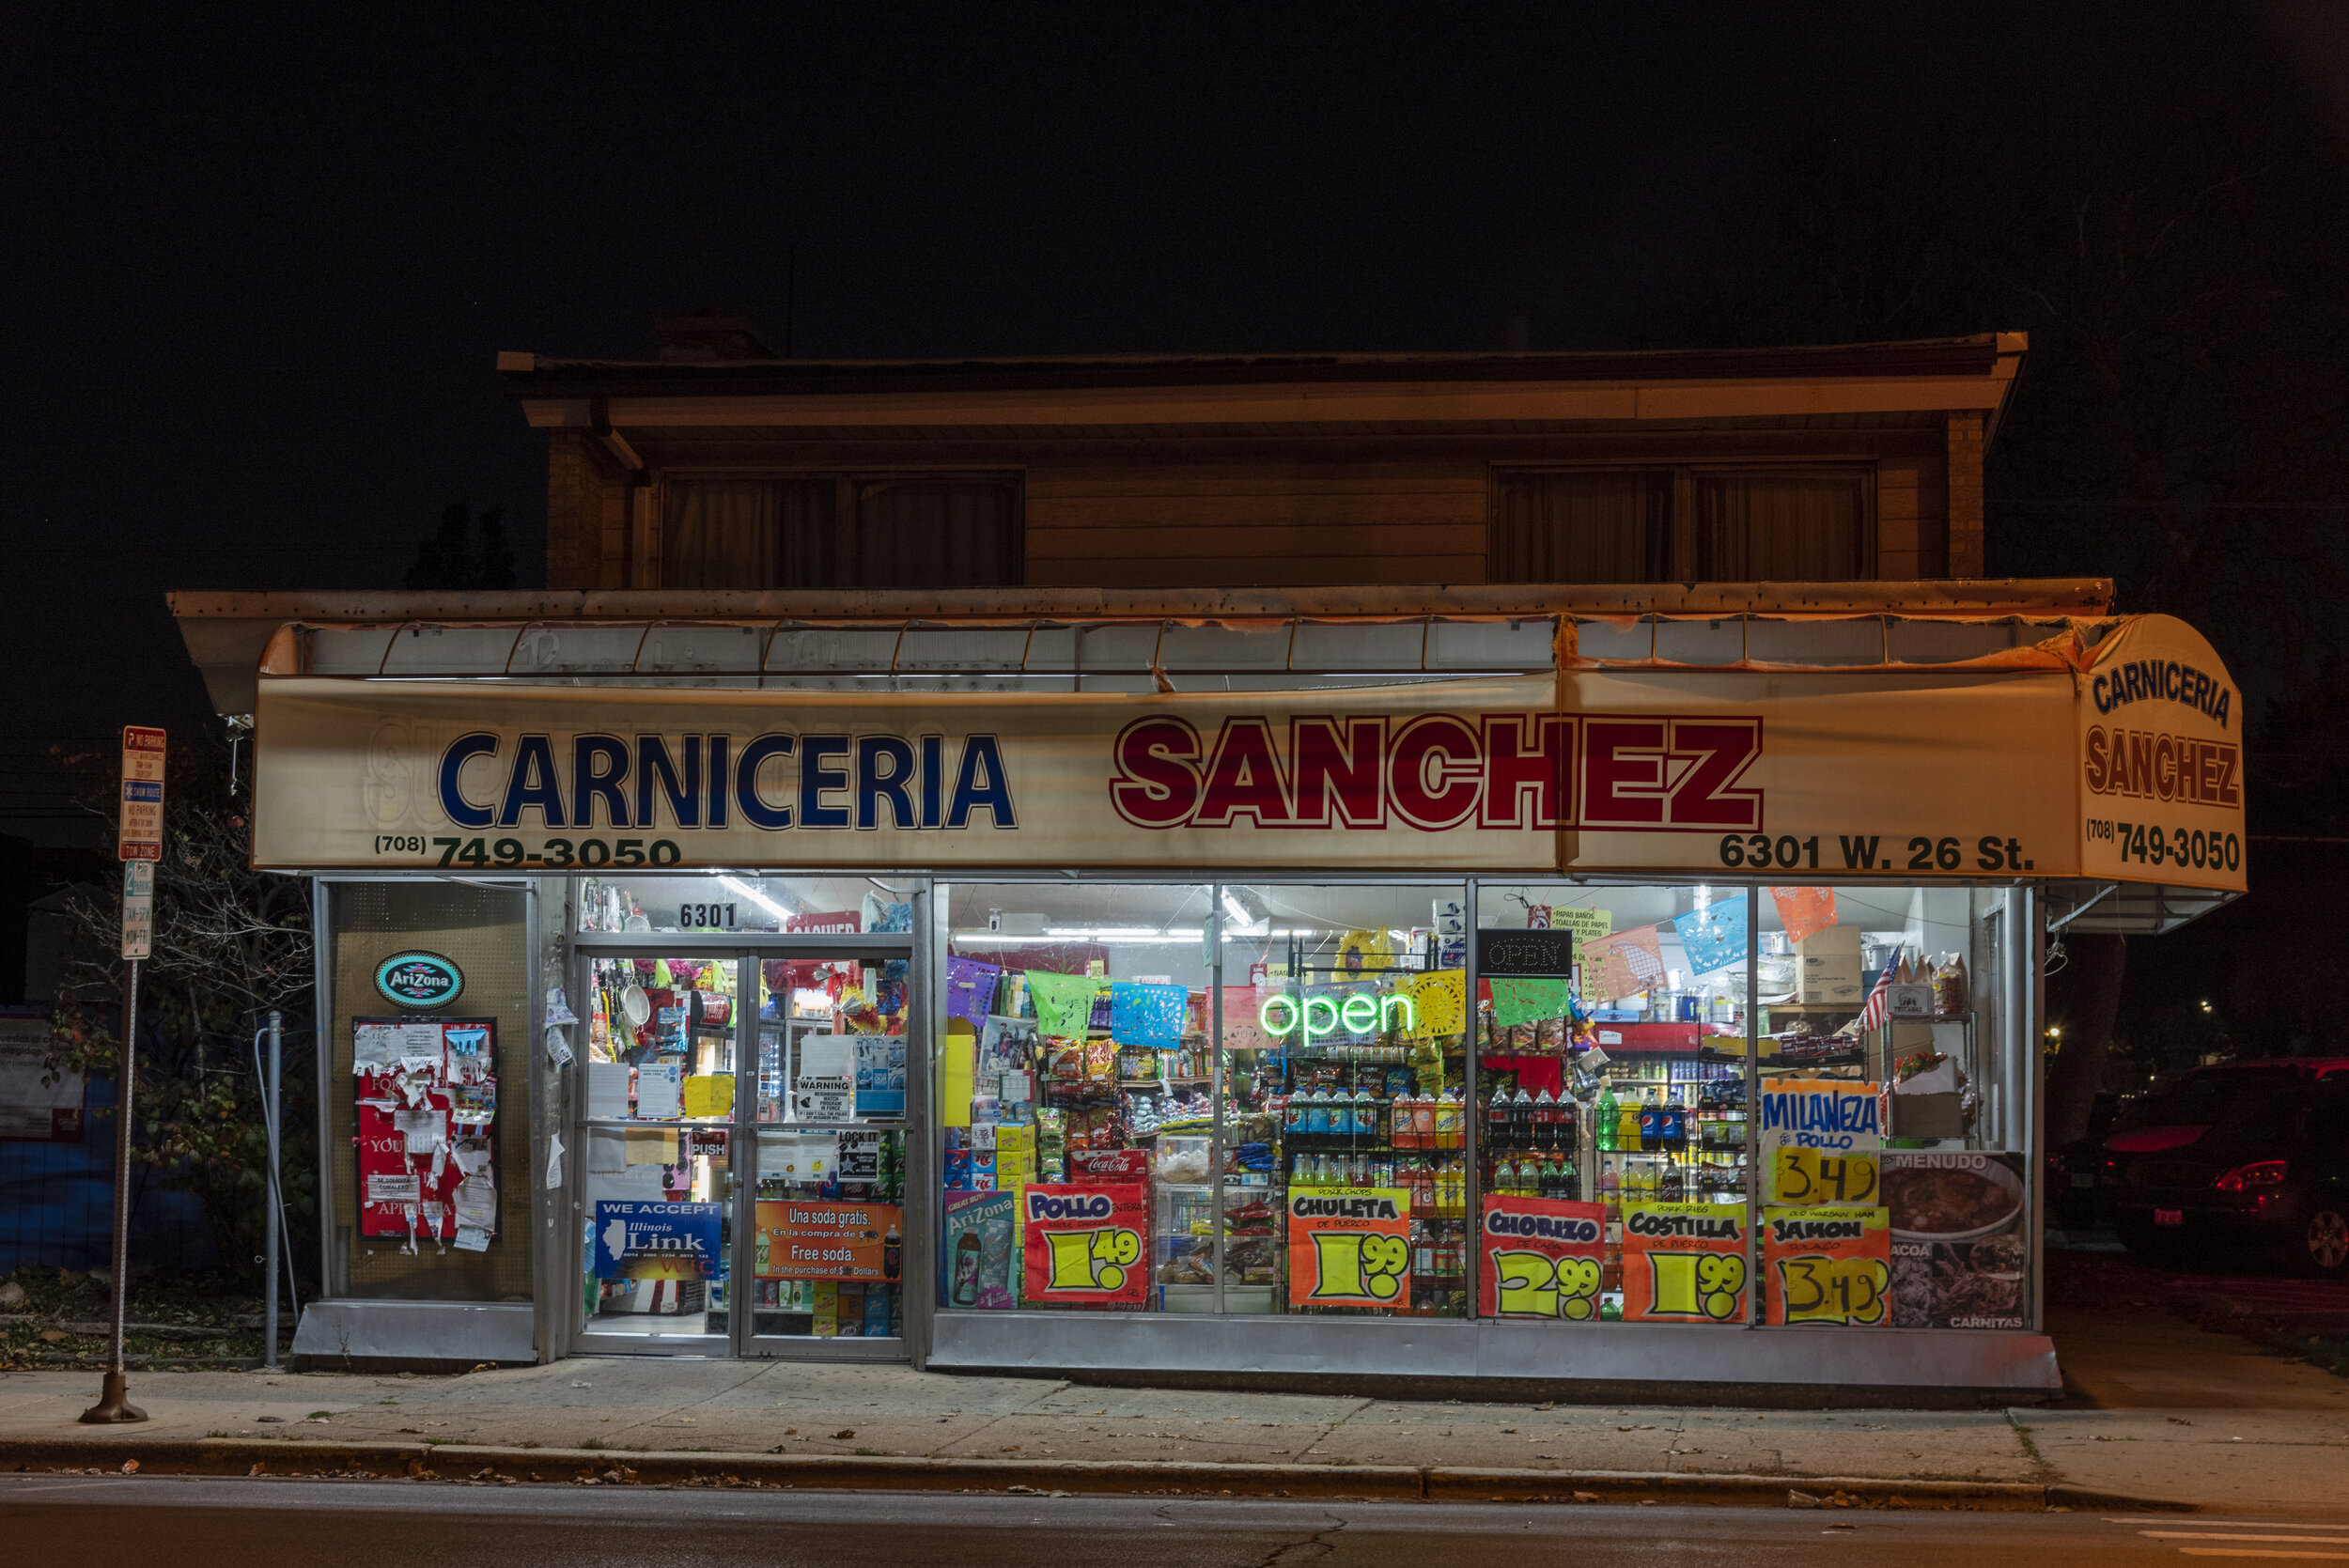 Carniceria Sanchez